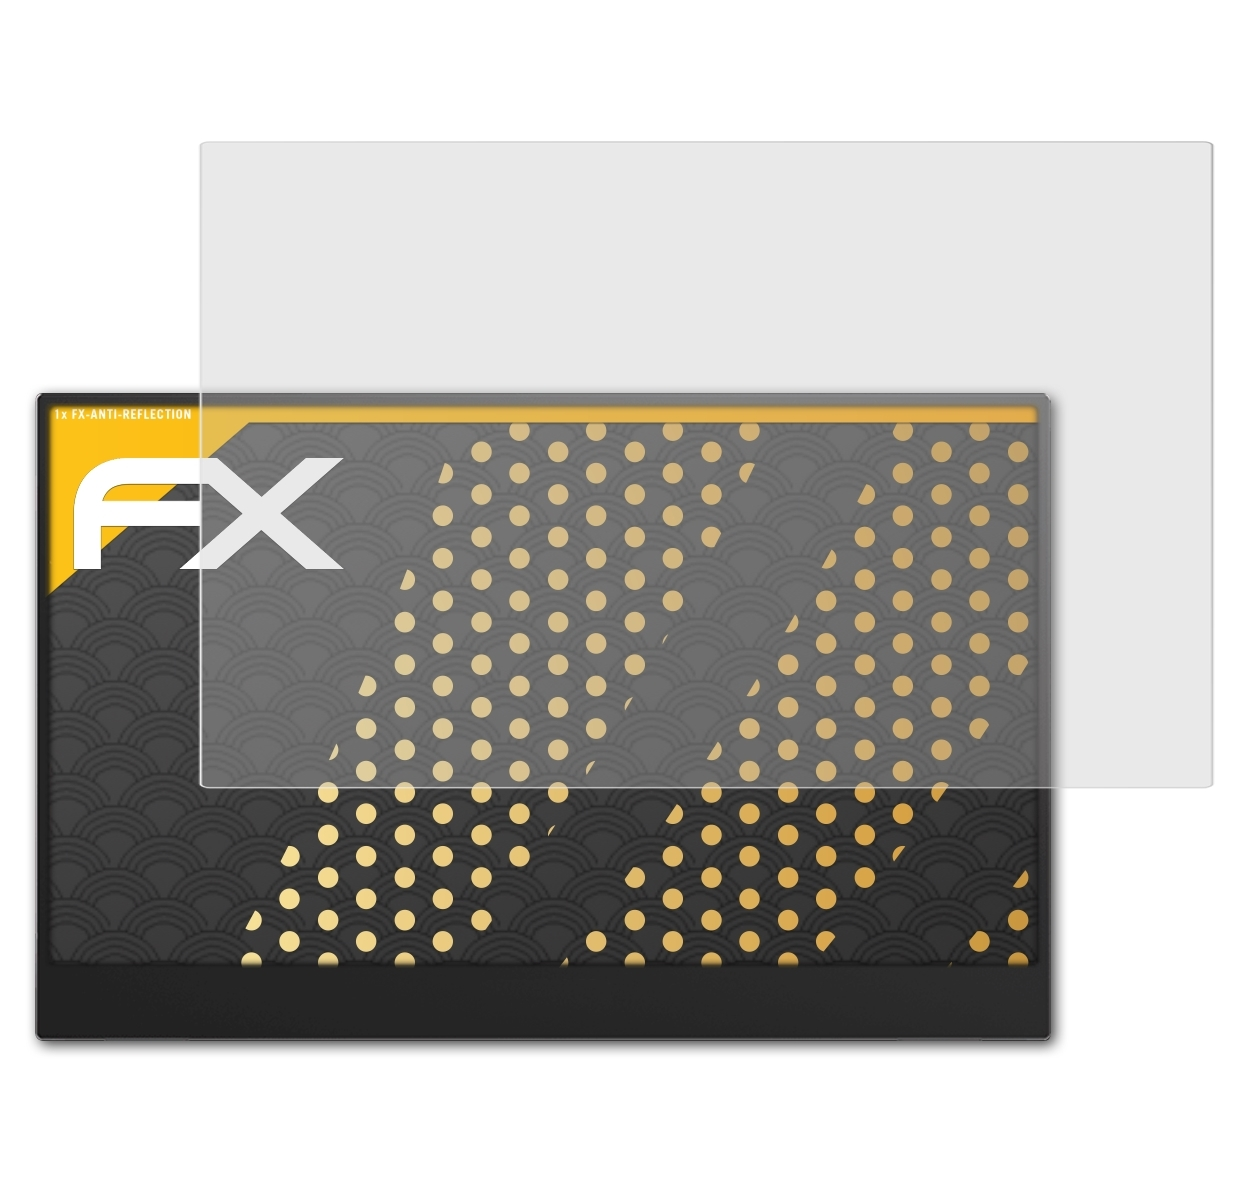 ATFOLIX MSI Optix Displayschutz(für MAG161V) FX-Antireflex